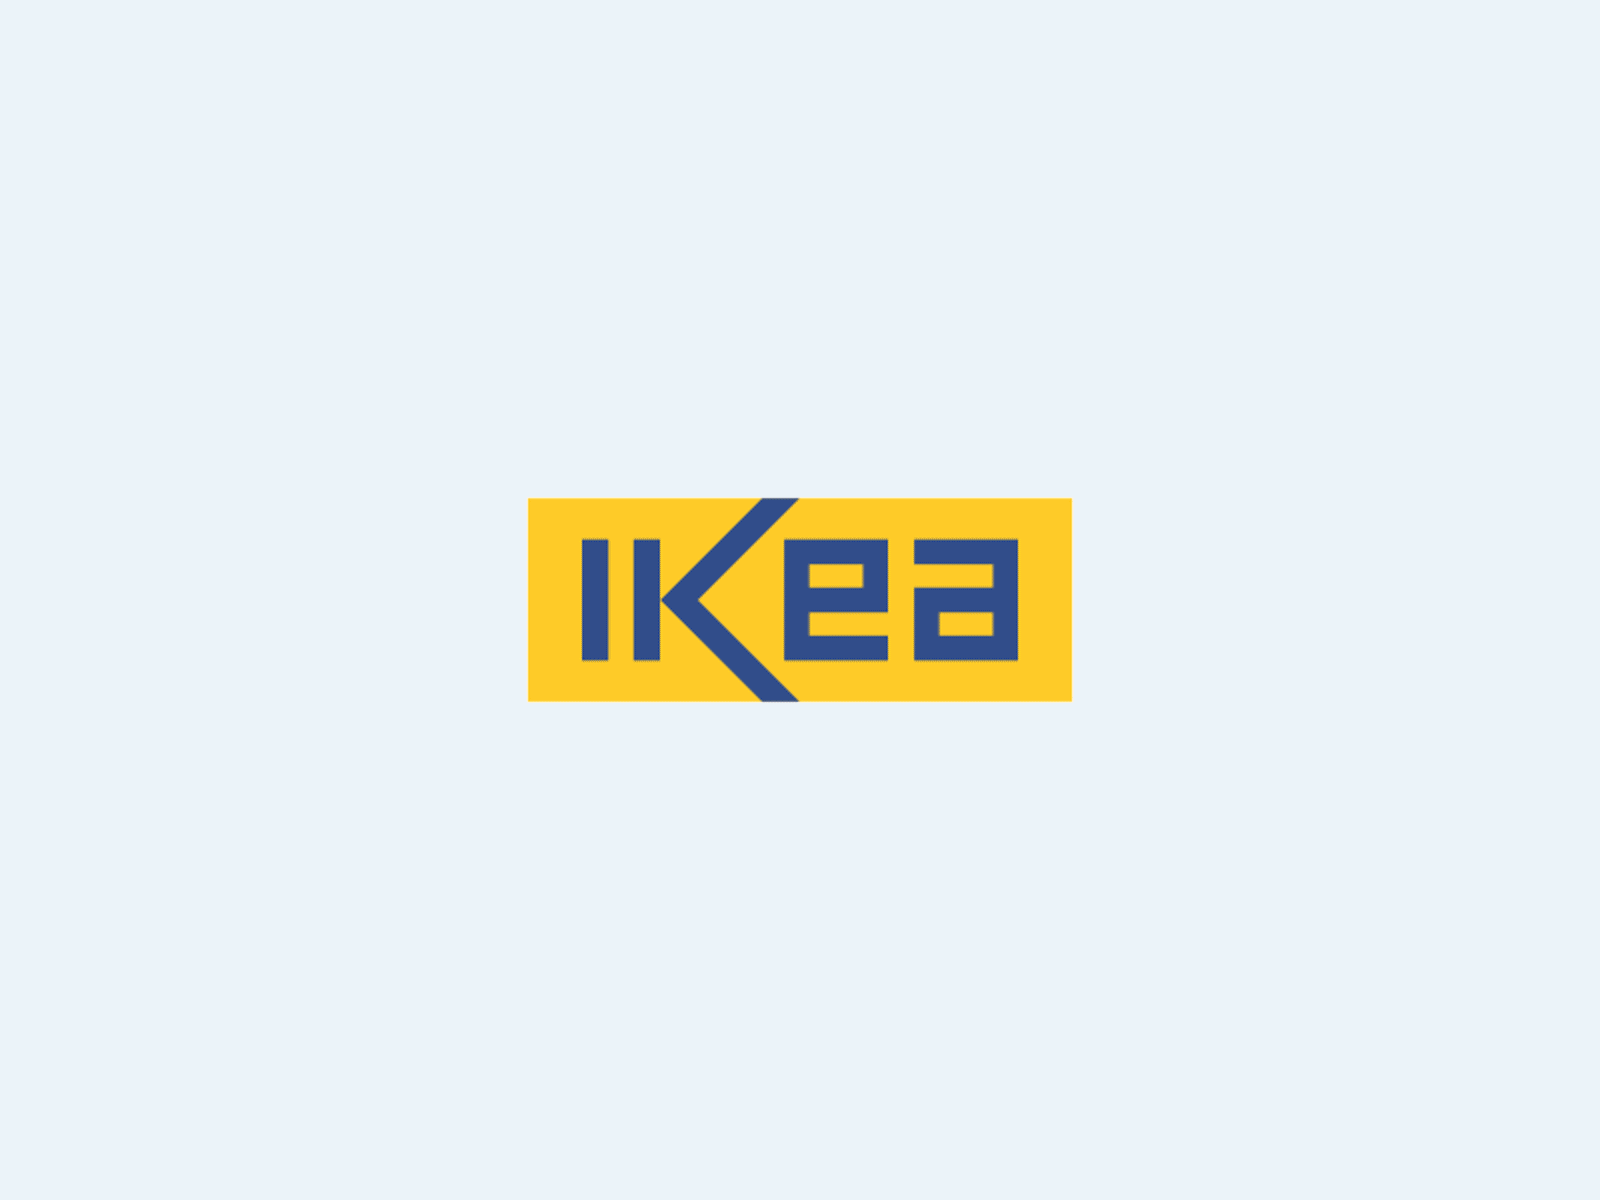 Ikea Rebranding By Vali21 On Dribbble